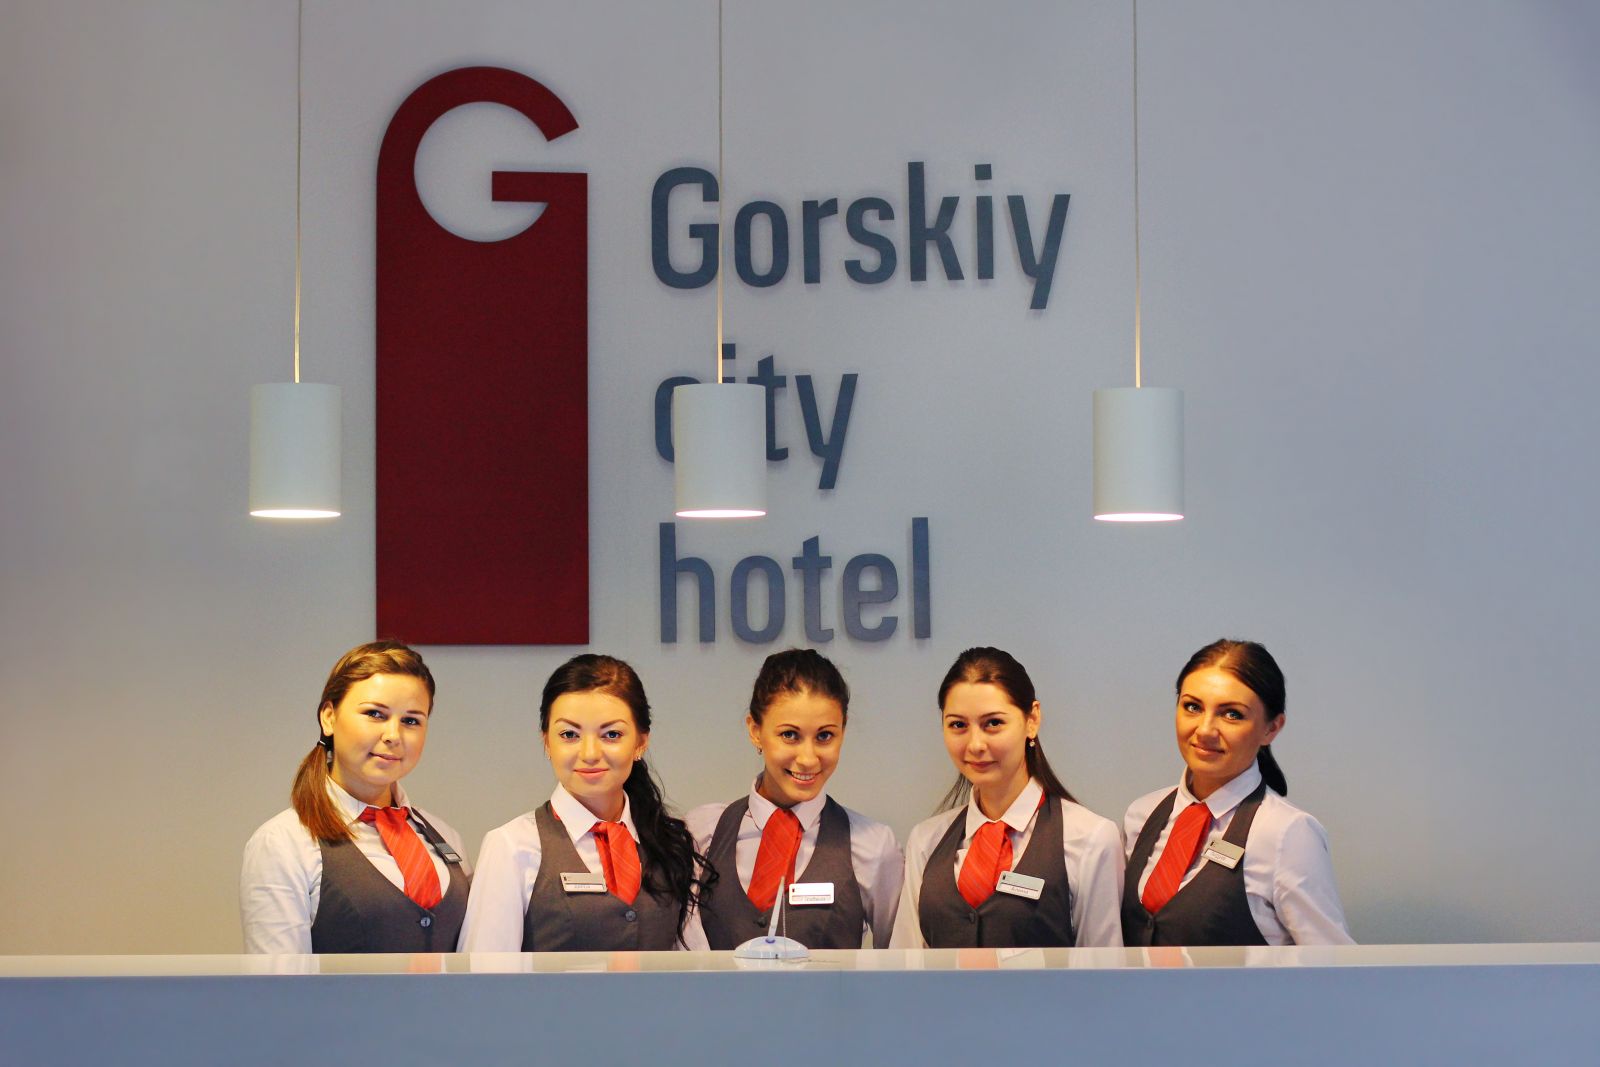 Новый бизнес-отель Gorskiy city открылся в Новосибирске